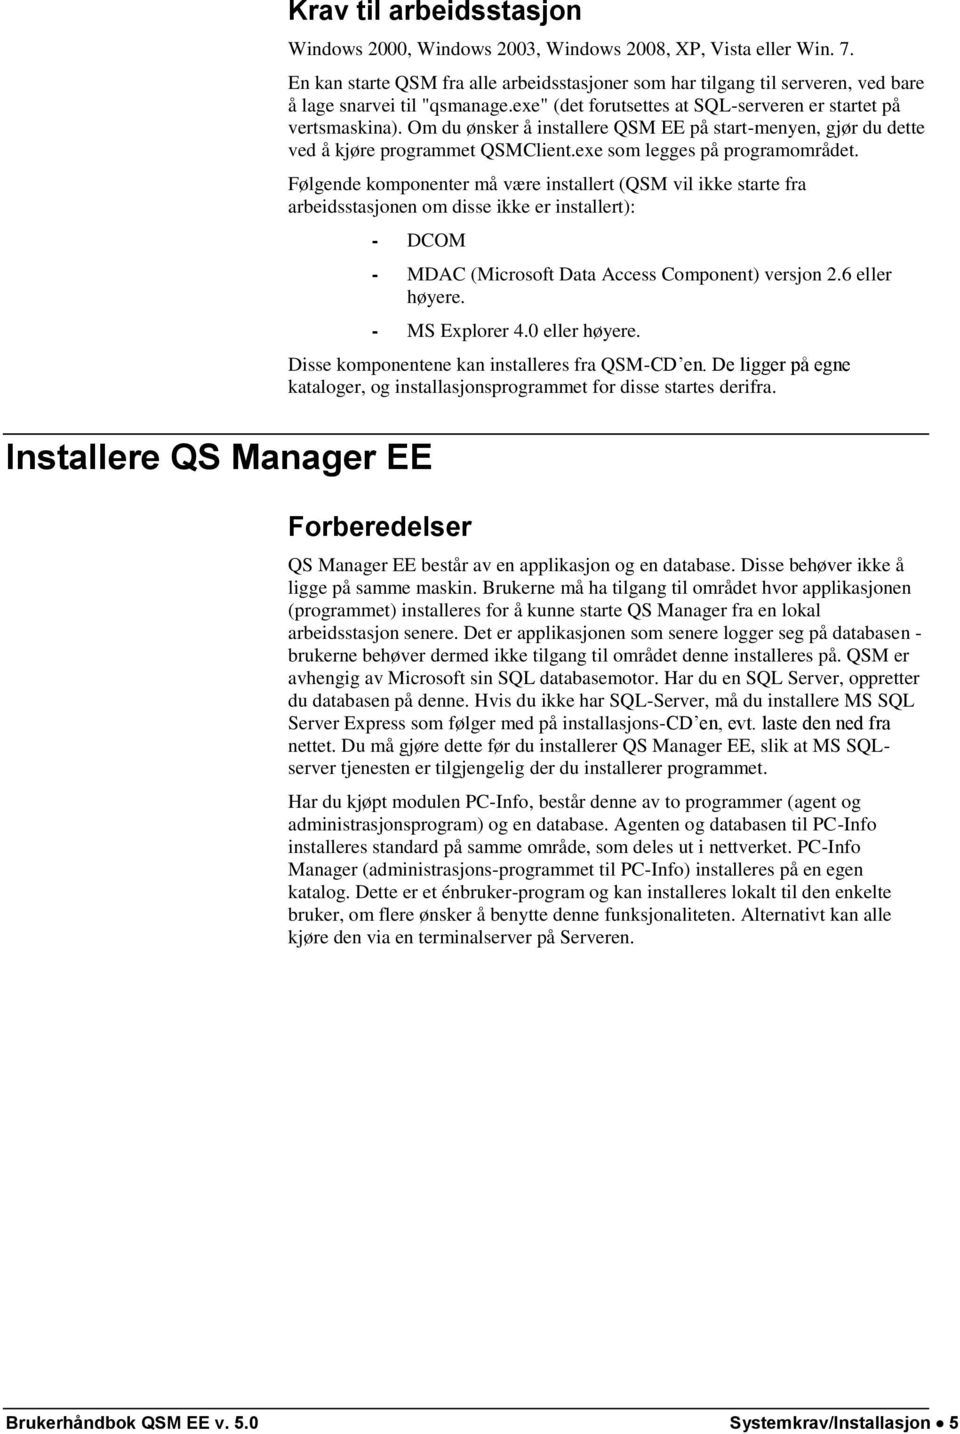 Om du ønsker å installere QSM EE på start-menyen, gjør du dette ved å kjøre programmet QSMClient.exe som legges på programområdet.